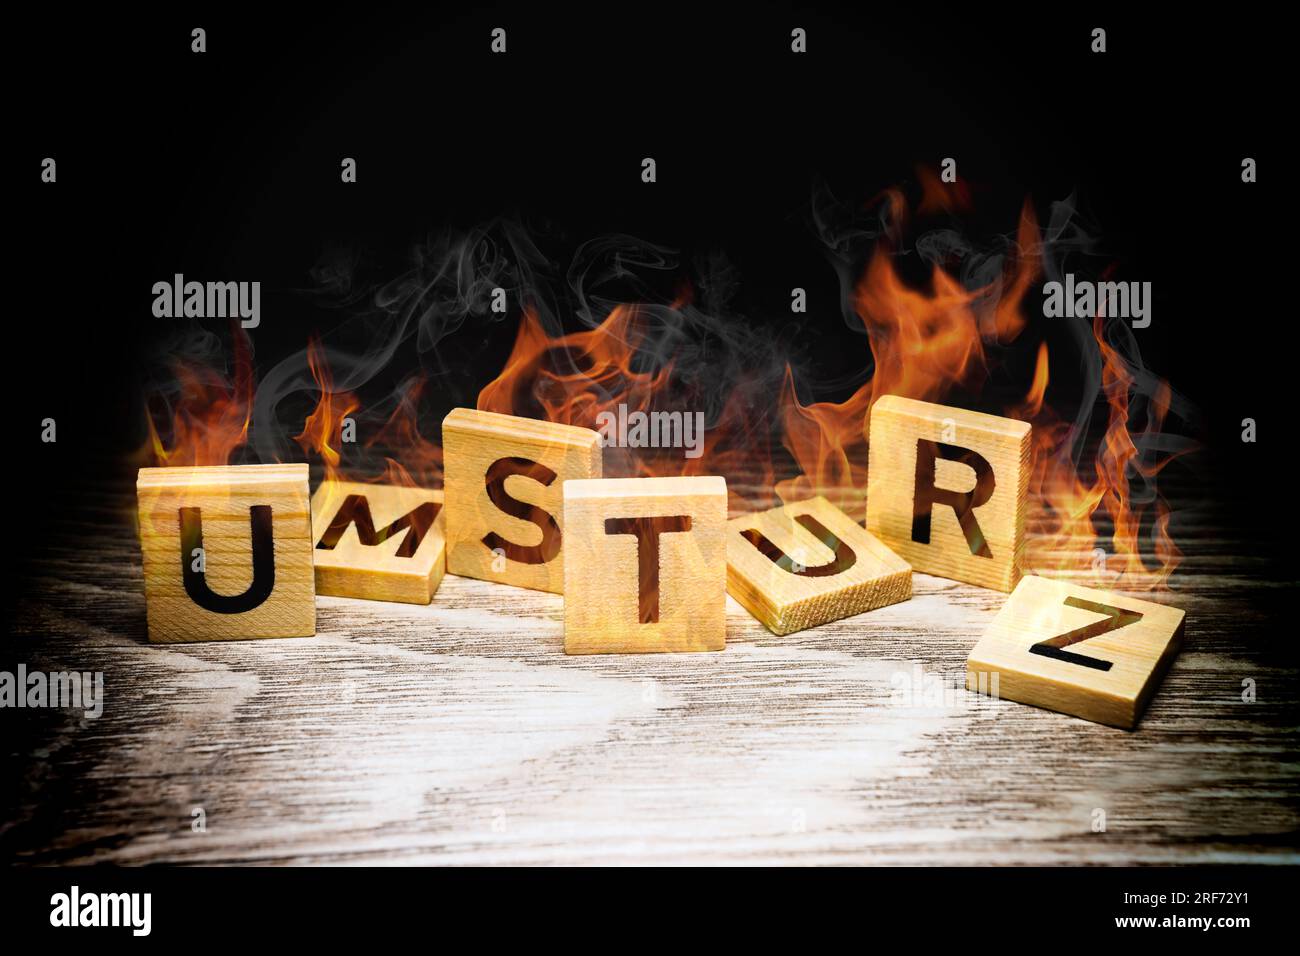 FOTOMONTAGE, Brennende Buchstaben bilden den Schriftzug Umsturz Foto Stock